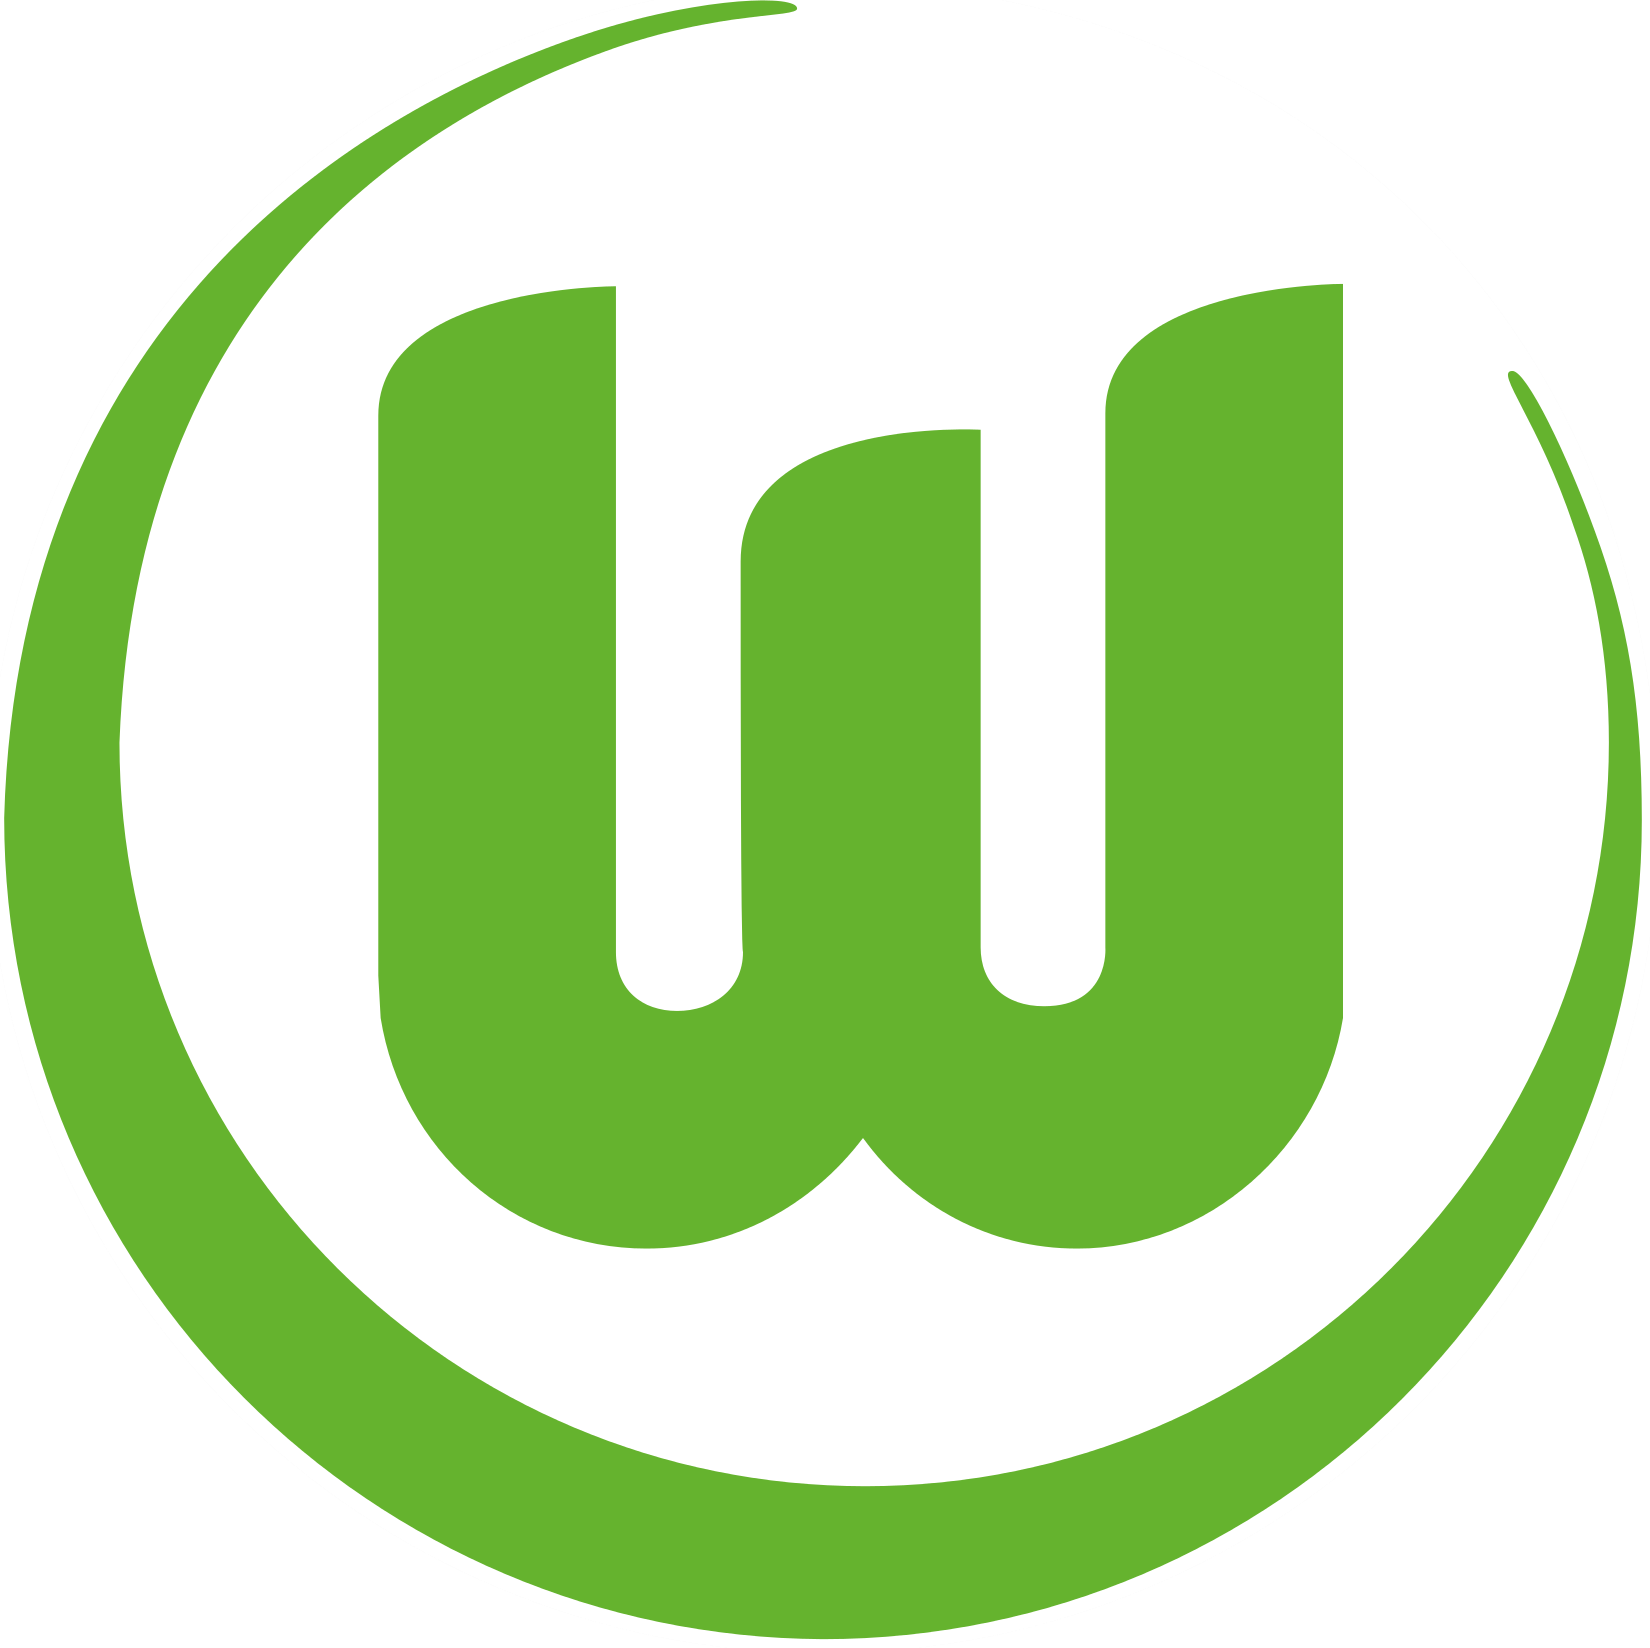 Wappen VfL Wolfsburg 1945 II - Frauen